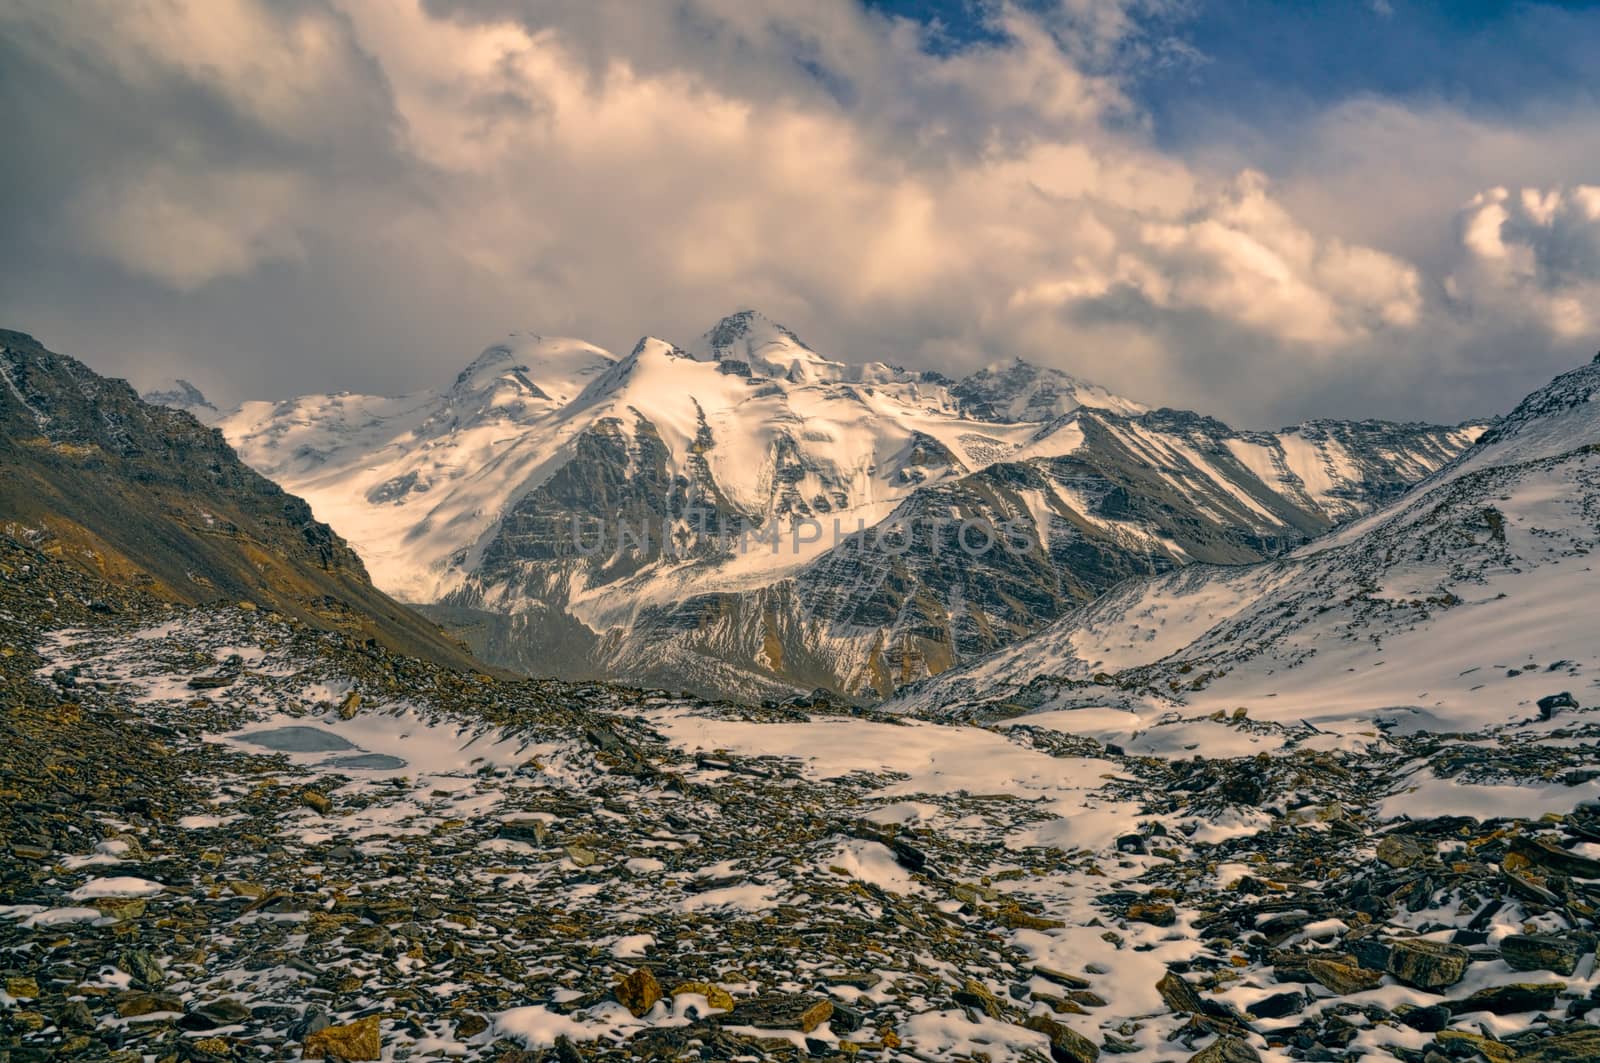 Rocky valley in Tajikistan by MichalKnitl